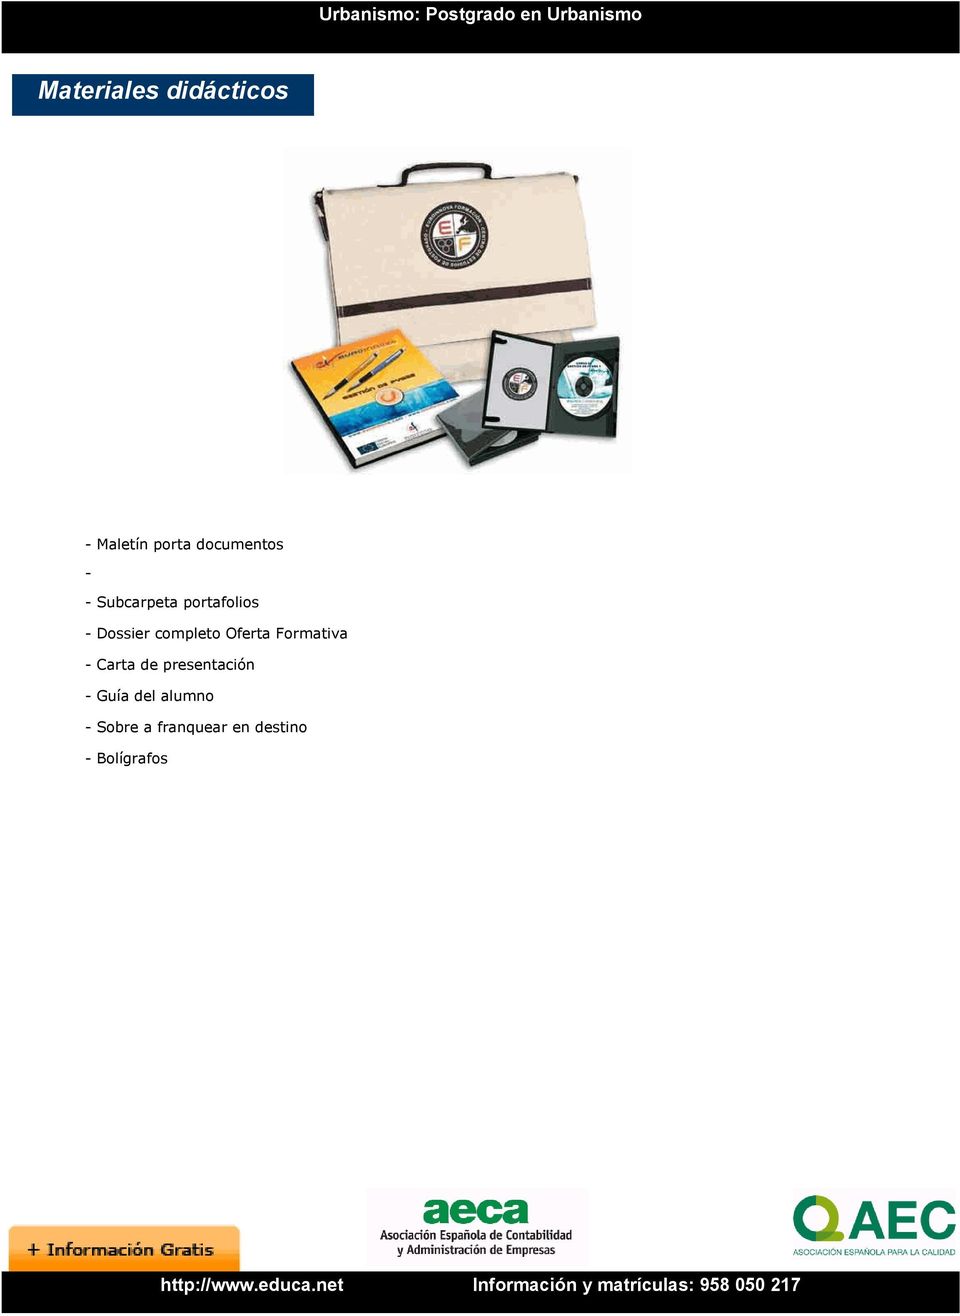 Oferta Formativa - Carta de presentación - Guía